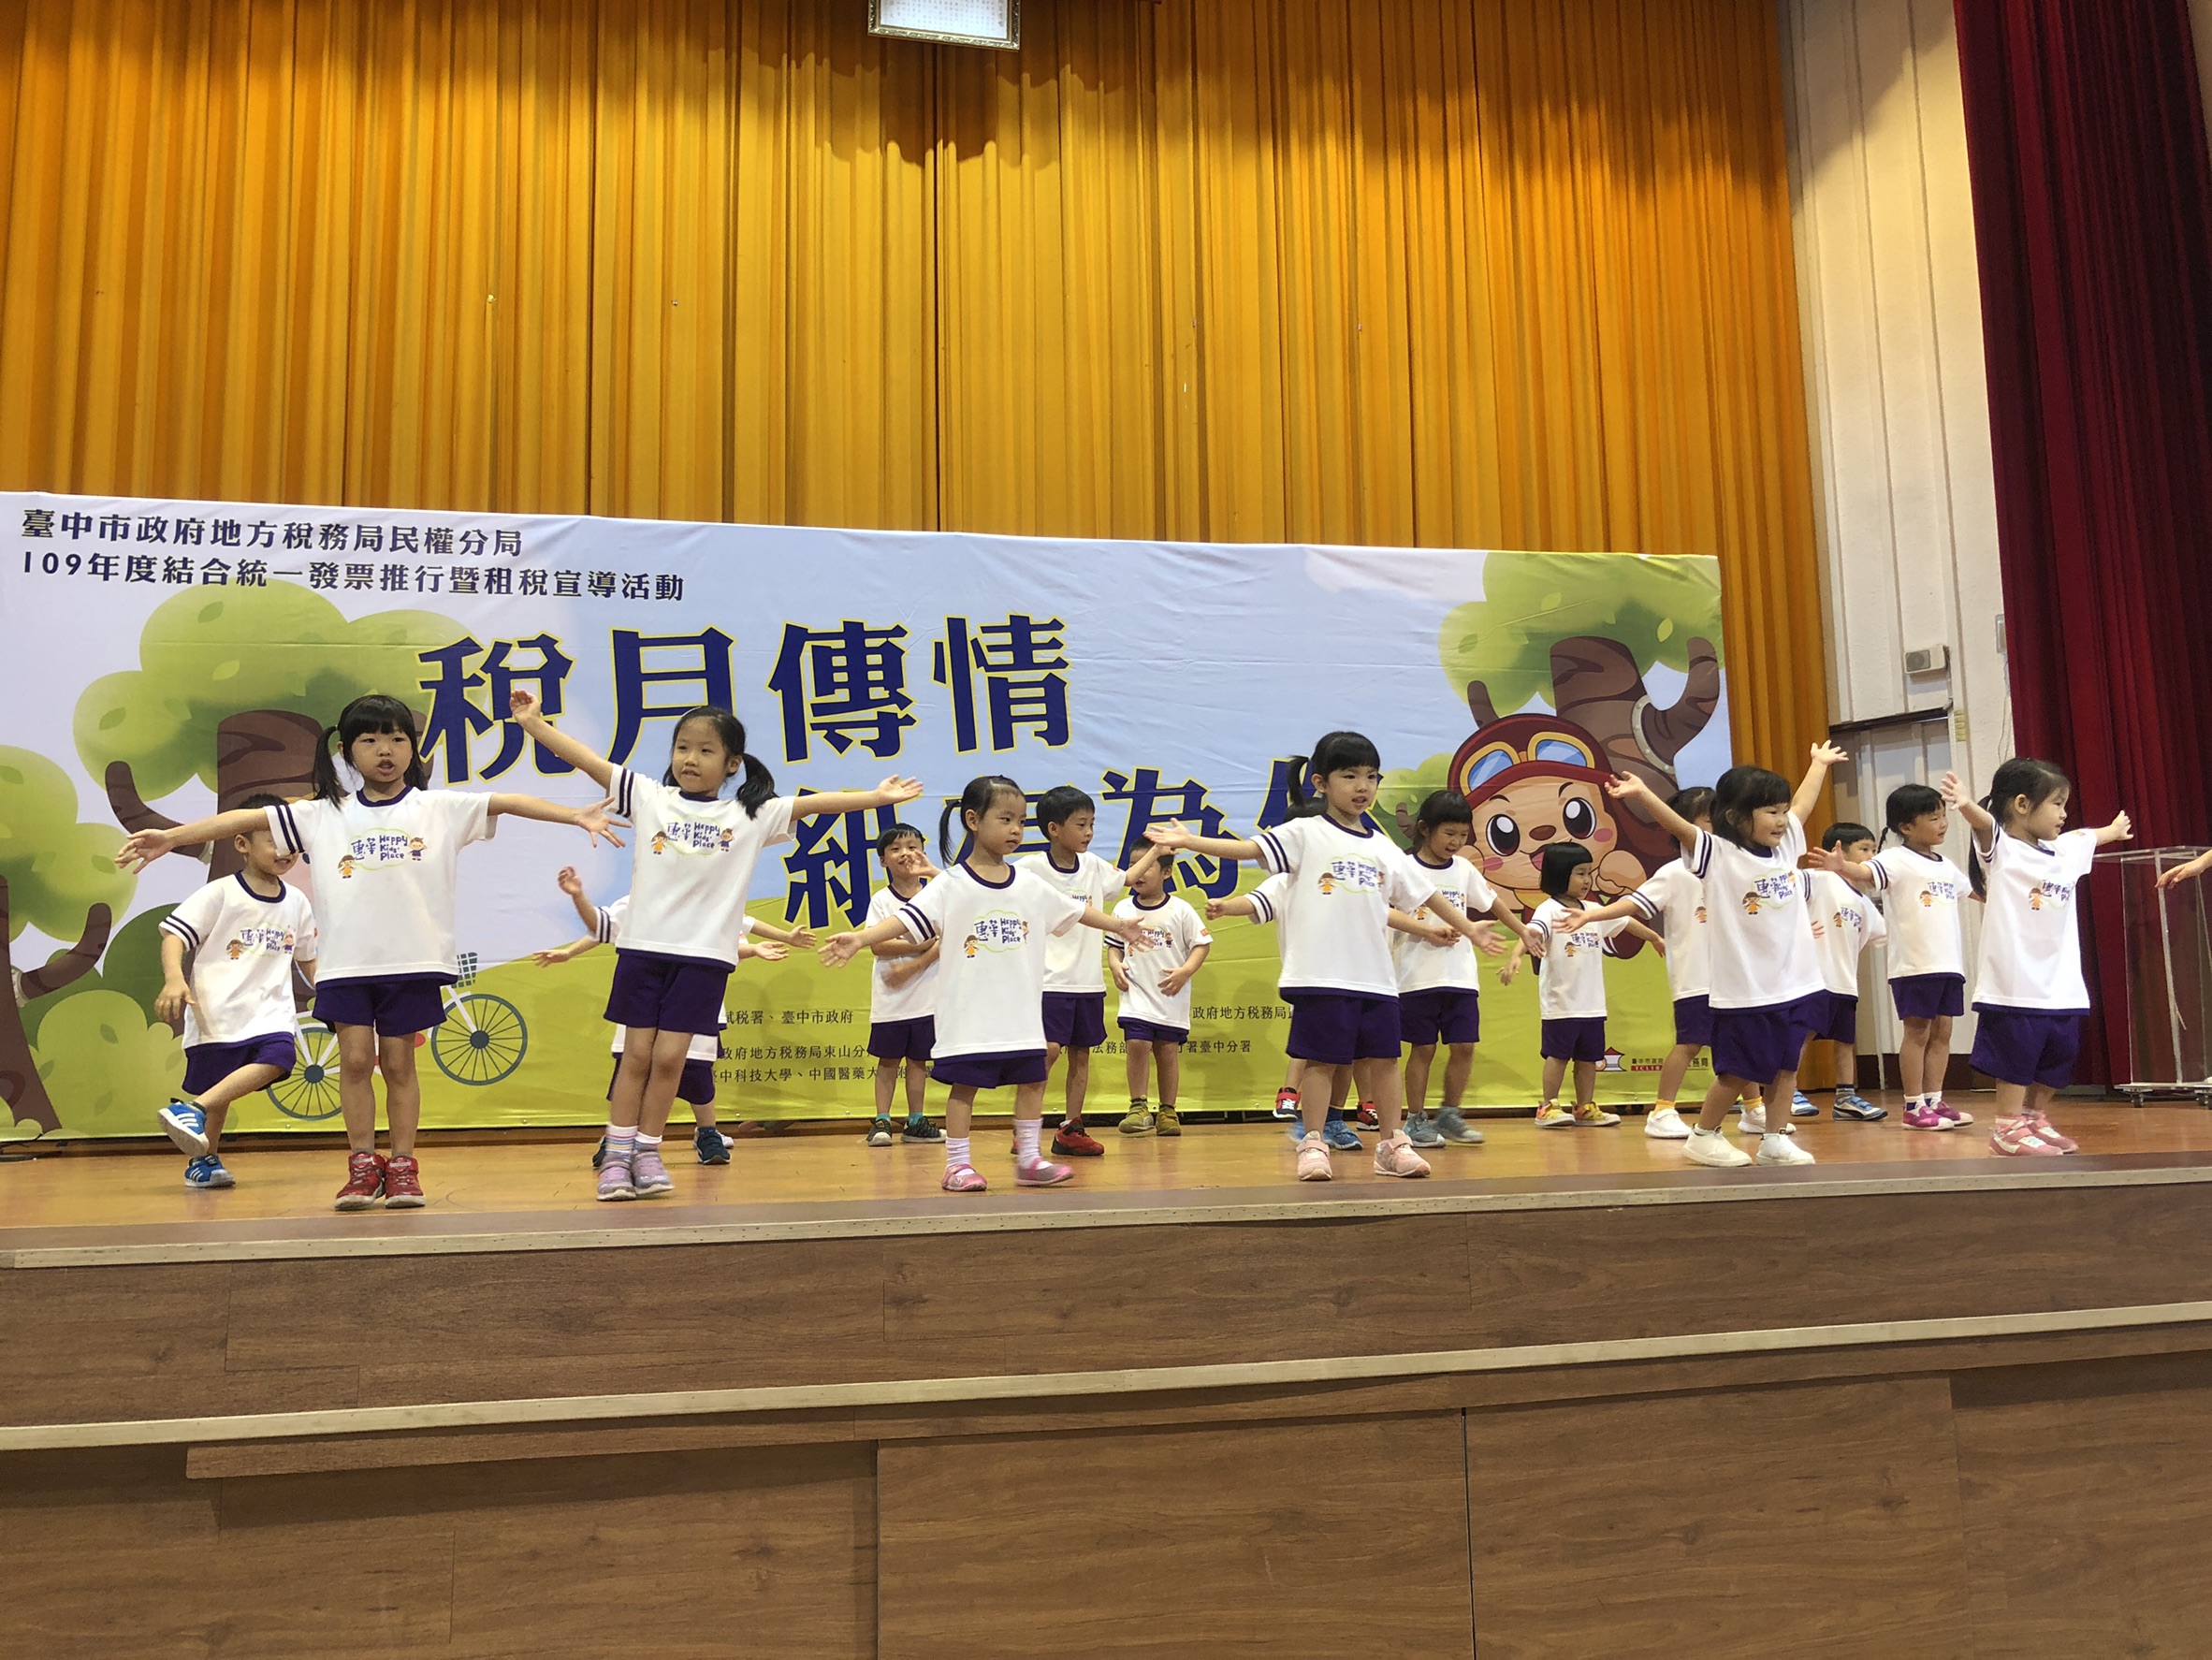 惠華幼兒園帶來的開場舞蹈「勇氣百分百」，小朋友賣力跳舞，可愛模樣炒熱現場氣氛!